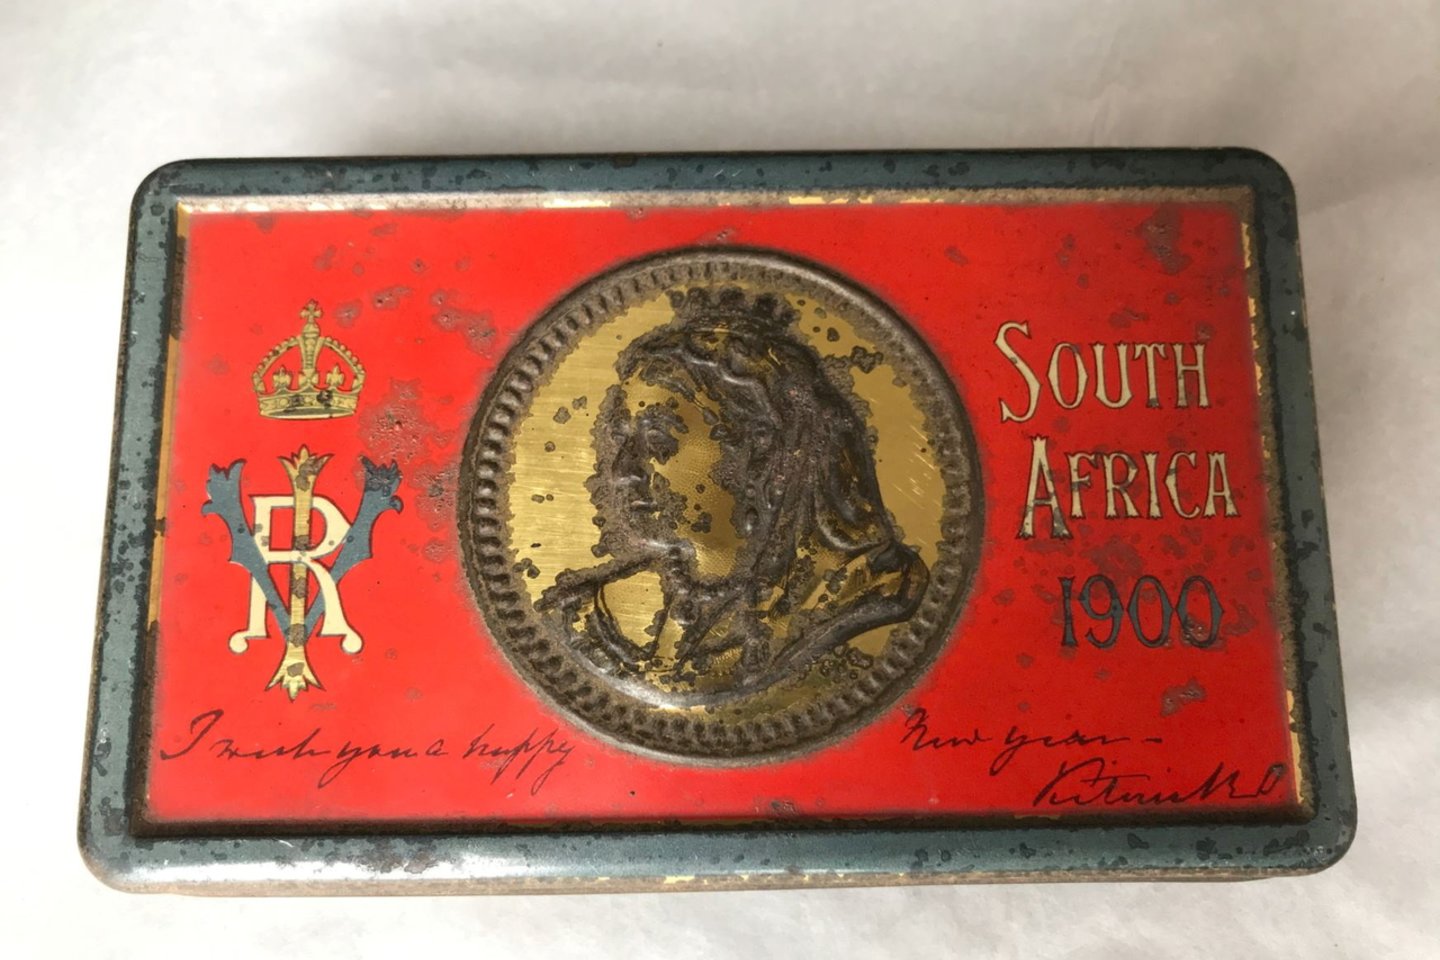 Šis šokoladukas priklausė anglui aristokratui, kuris kariavo Antrajame būrų kare. Maža dovanėlė buvo rasta šalmo dėkle.<br>REUTERS/Scanpix nuotr.